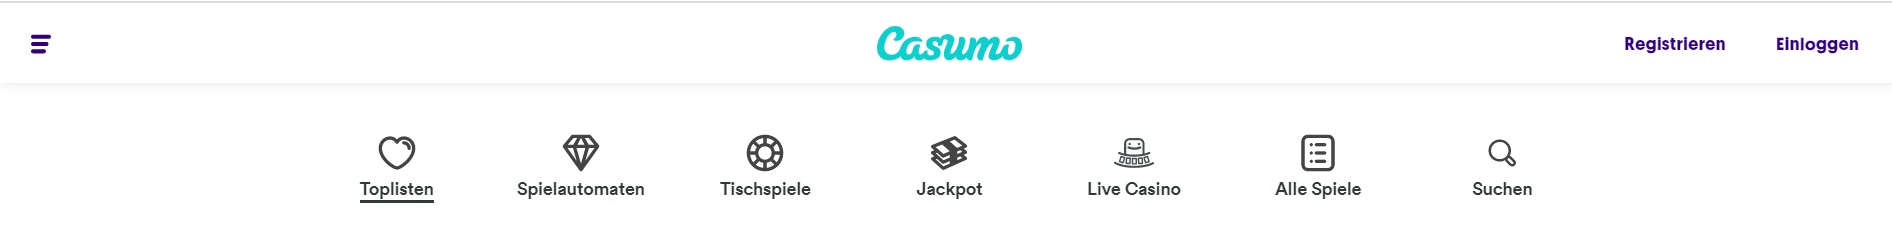 Casumo Casino Diversität der Spiele